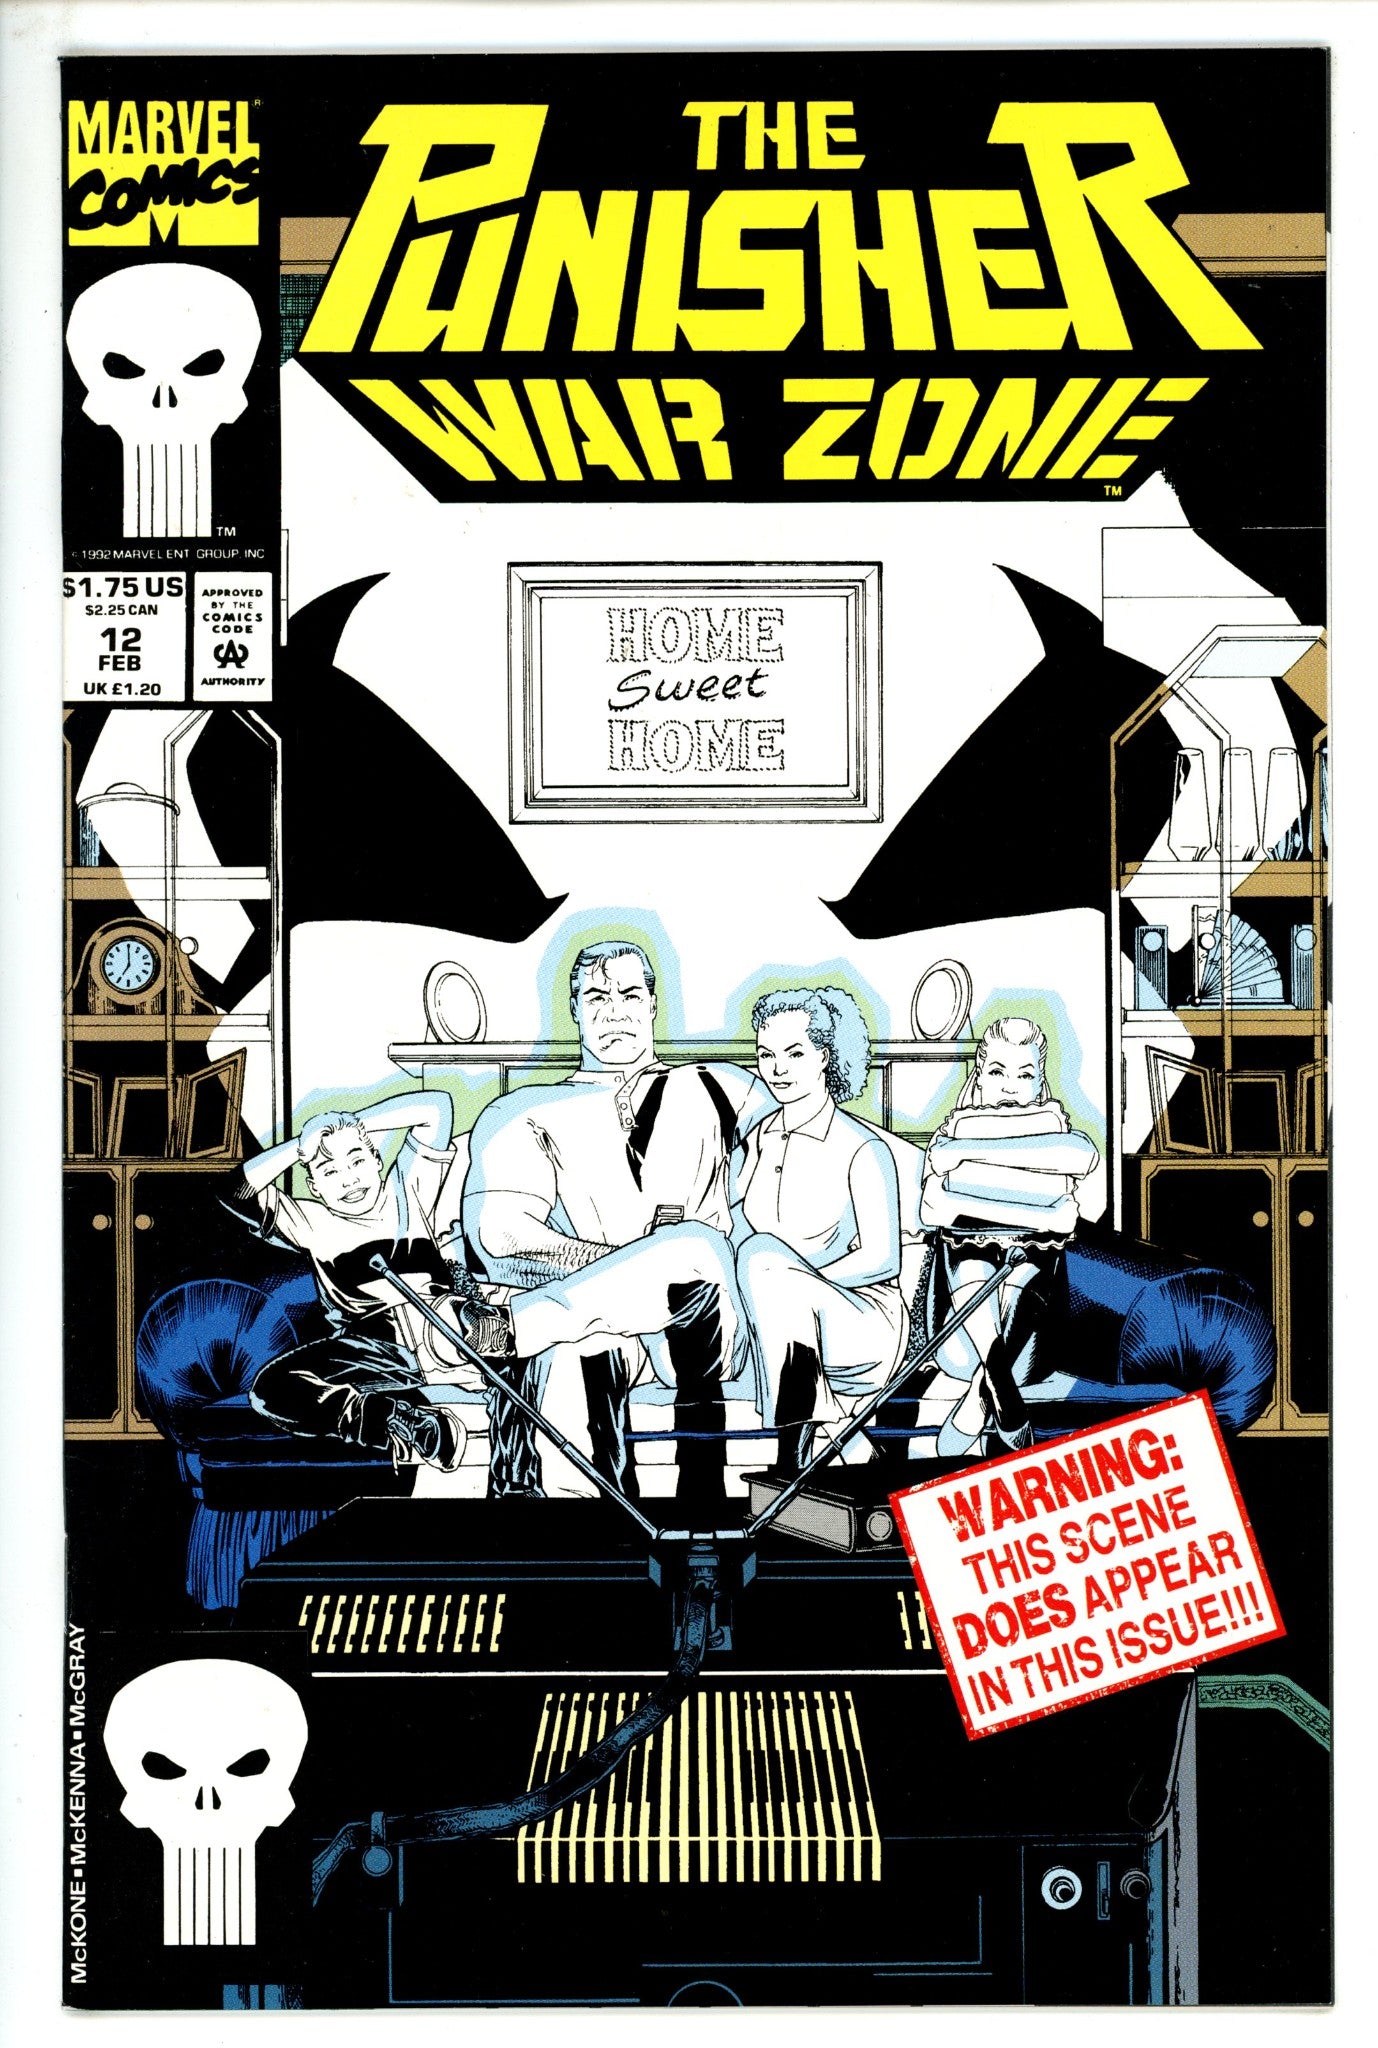 The Punisher: War Zone Vol 1 12 (1992)